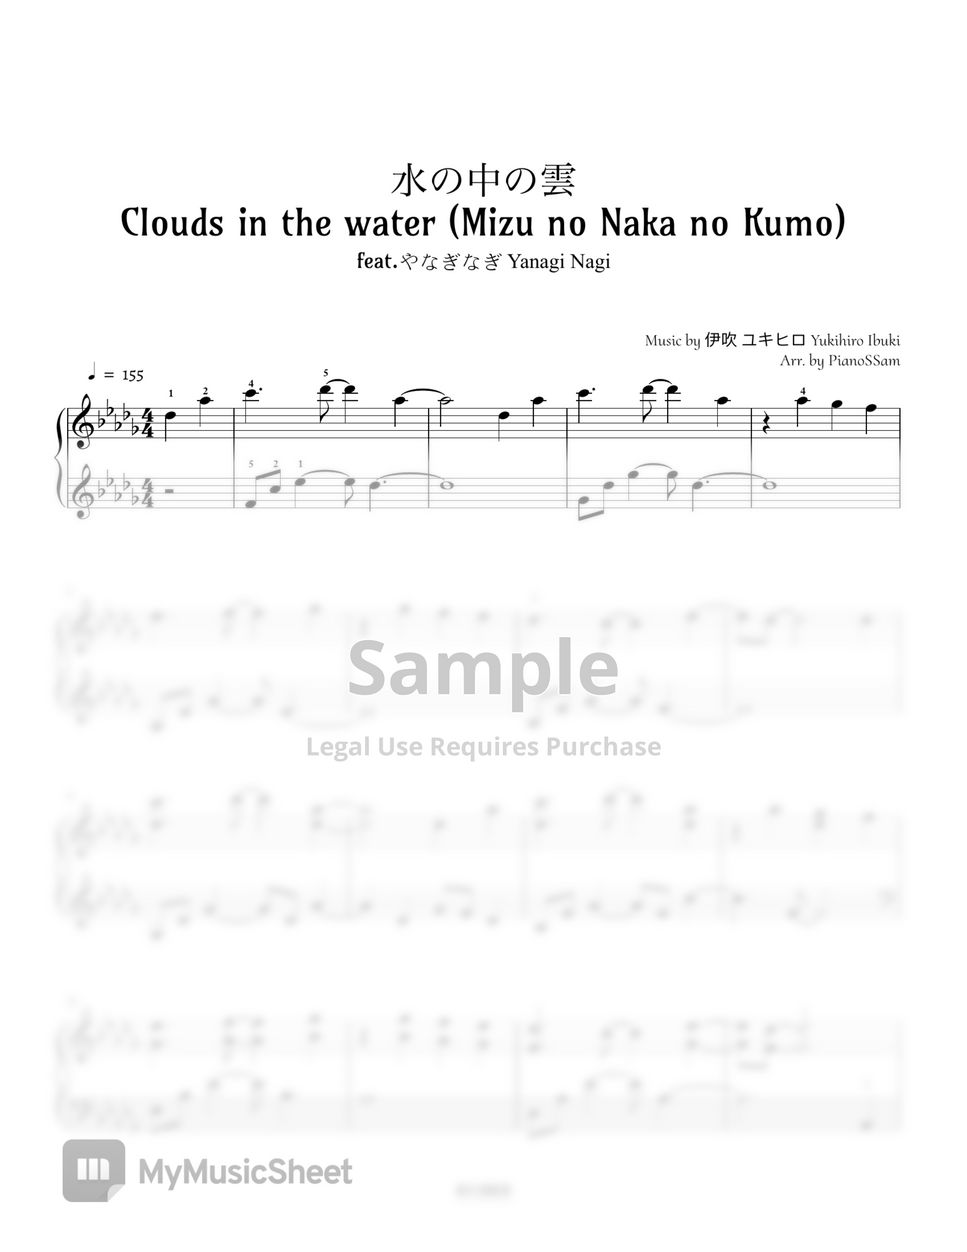 Yukihiro Ibuki - Mizu no Naka no Kumo (feat. やなぎなぎ Yanagi Nagi) by PianoSSam